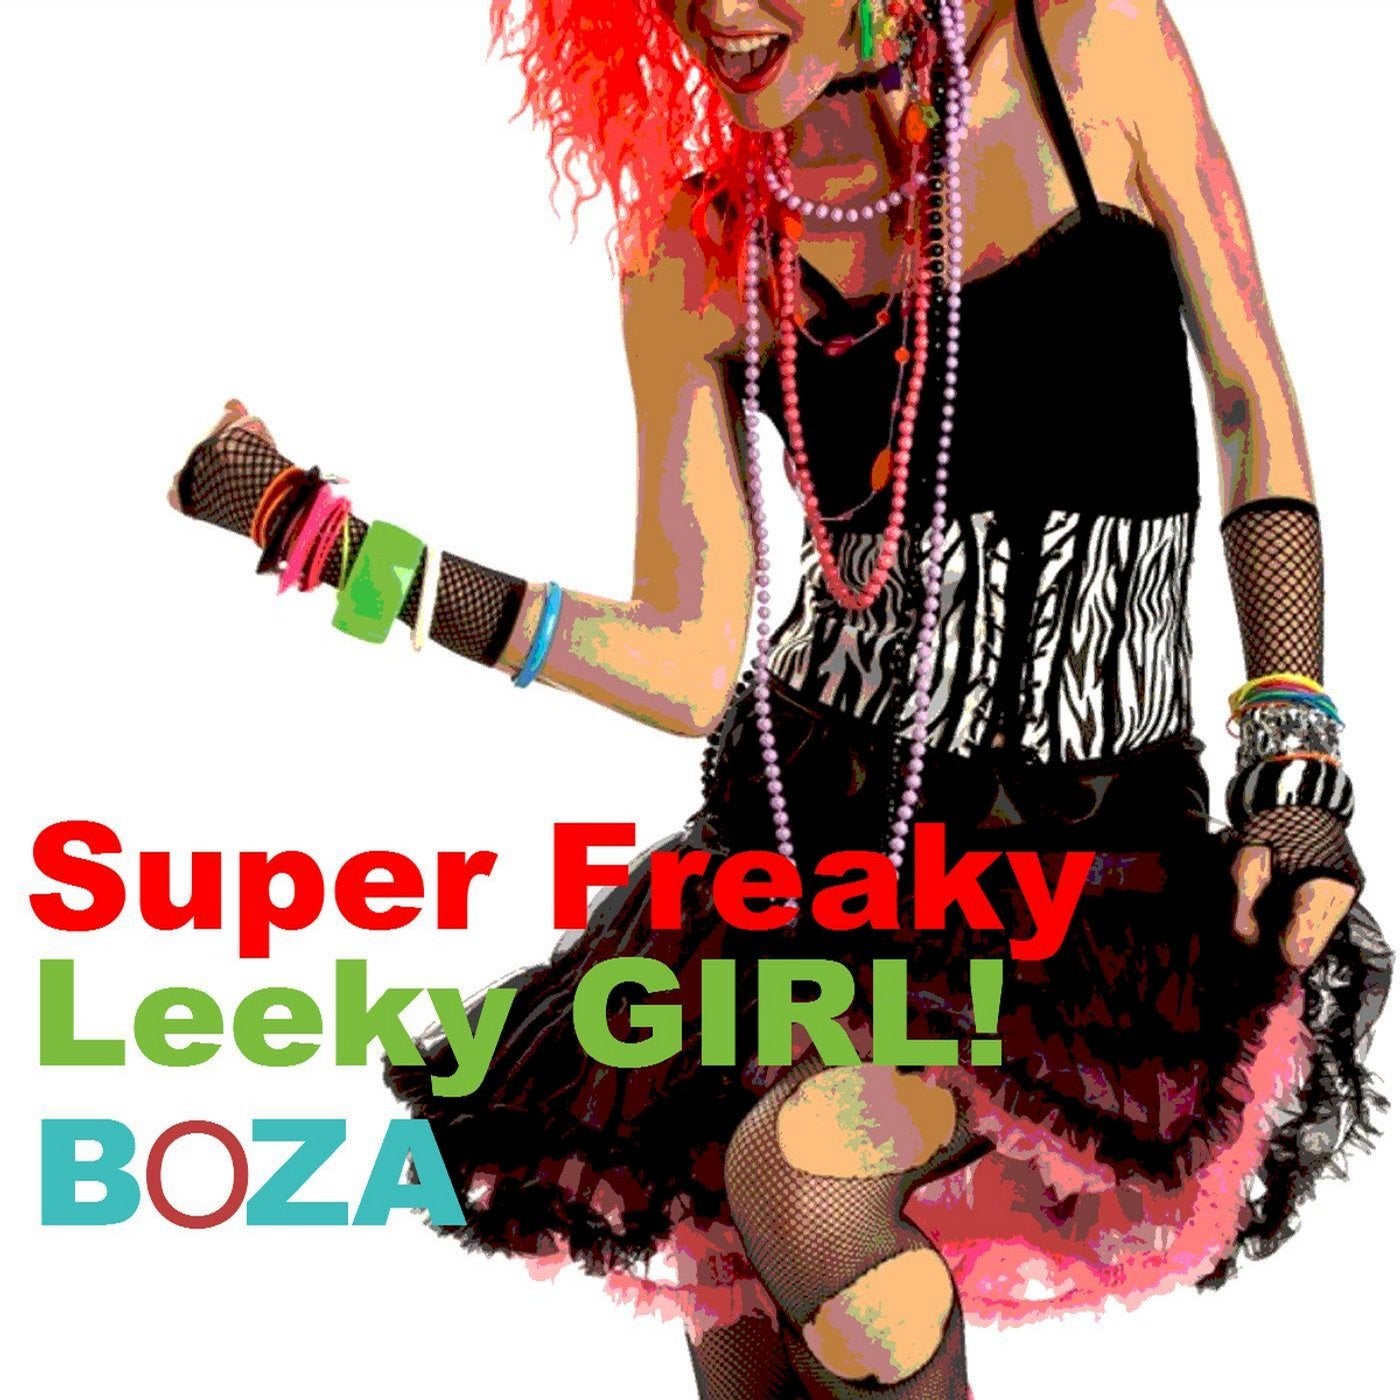 Super Freaky Leaky Girl